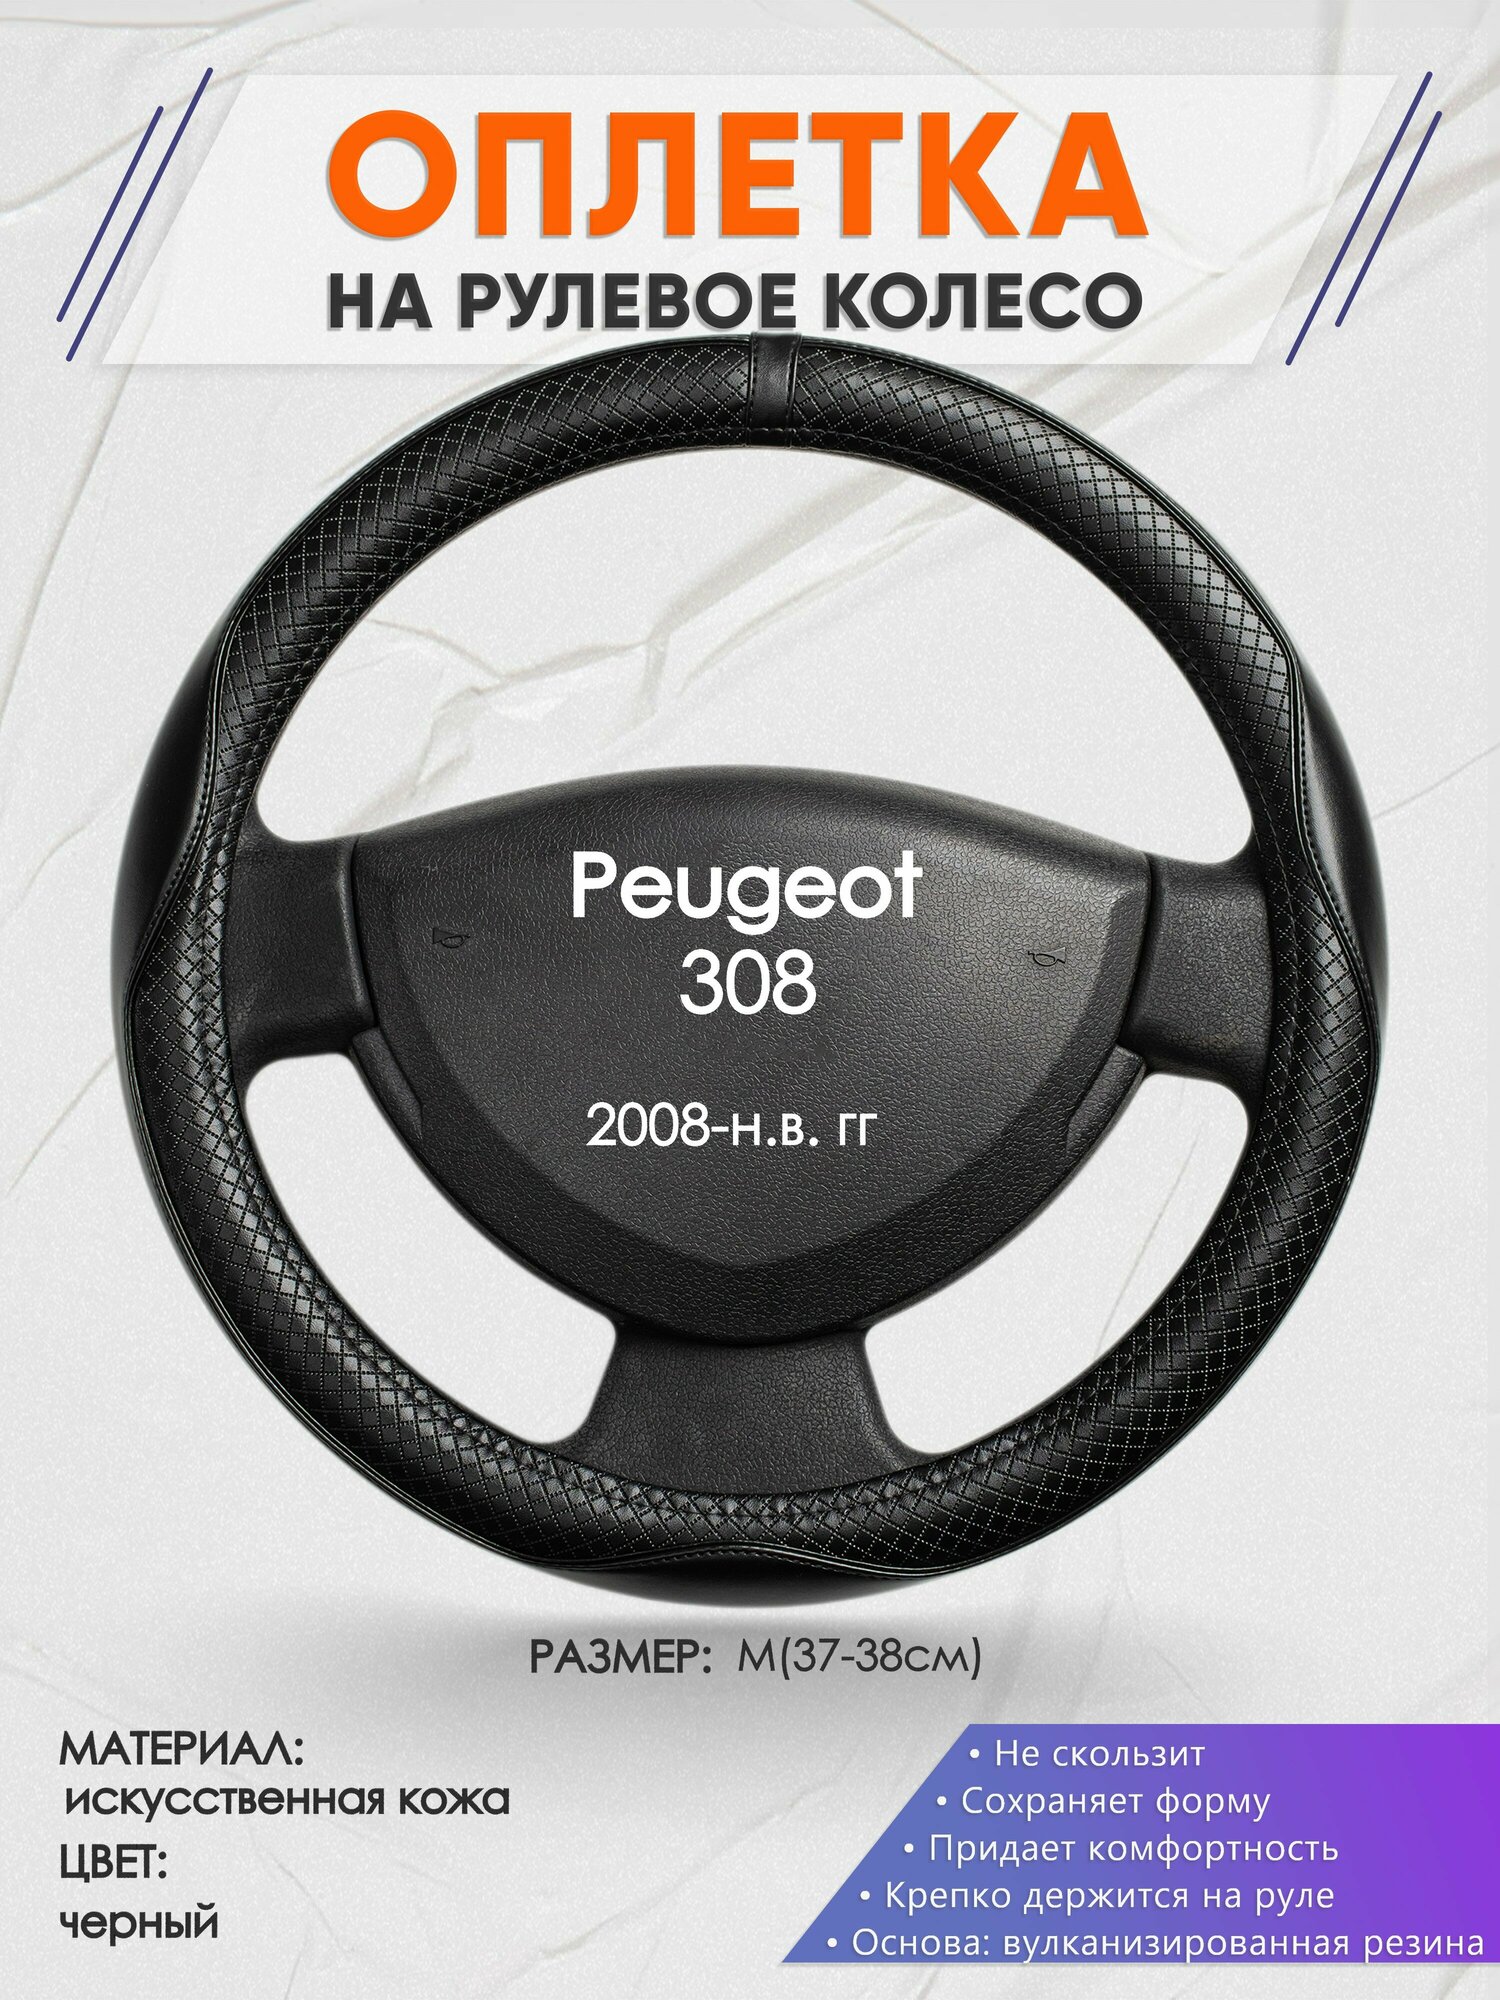 Оплетка на руль для Peugeot 308 (Пежо ) 2008-н. в, M(37-38см), Искусственная кожа 87